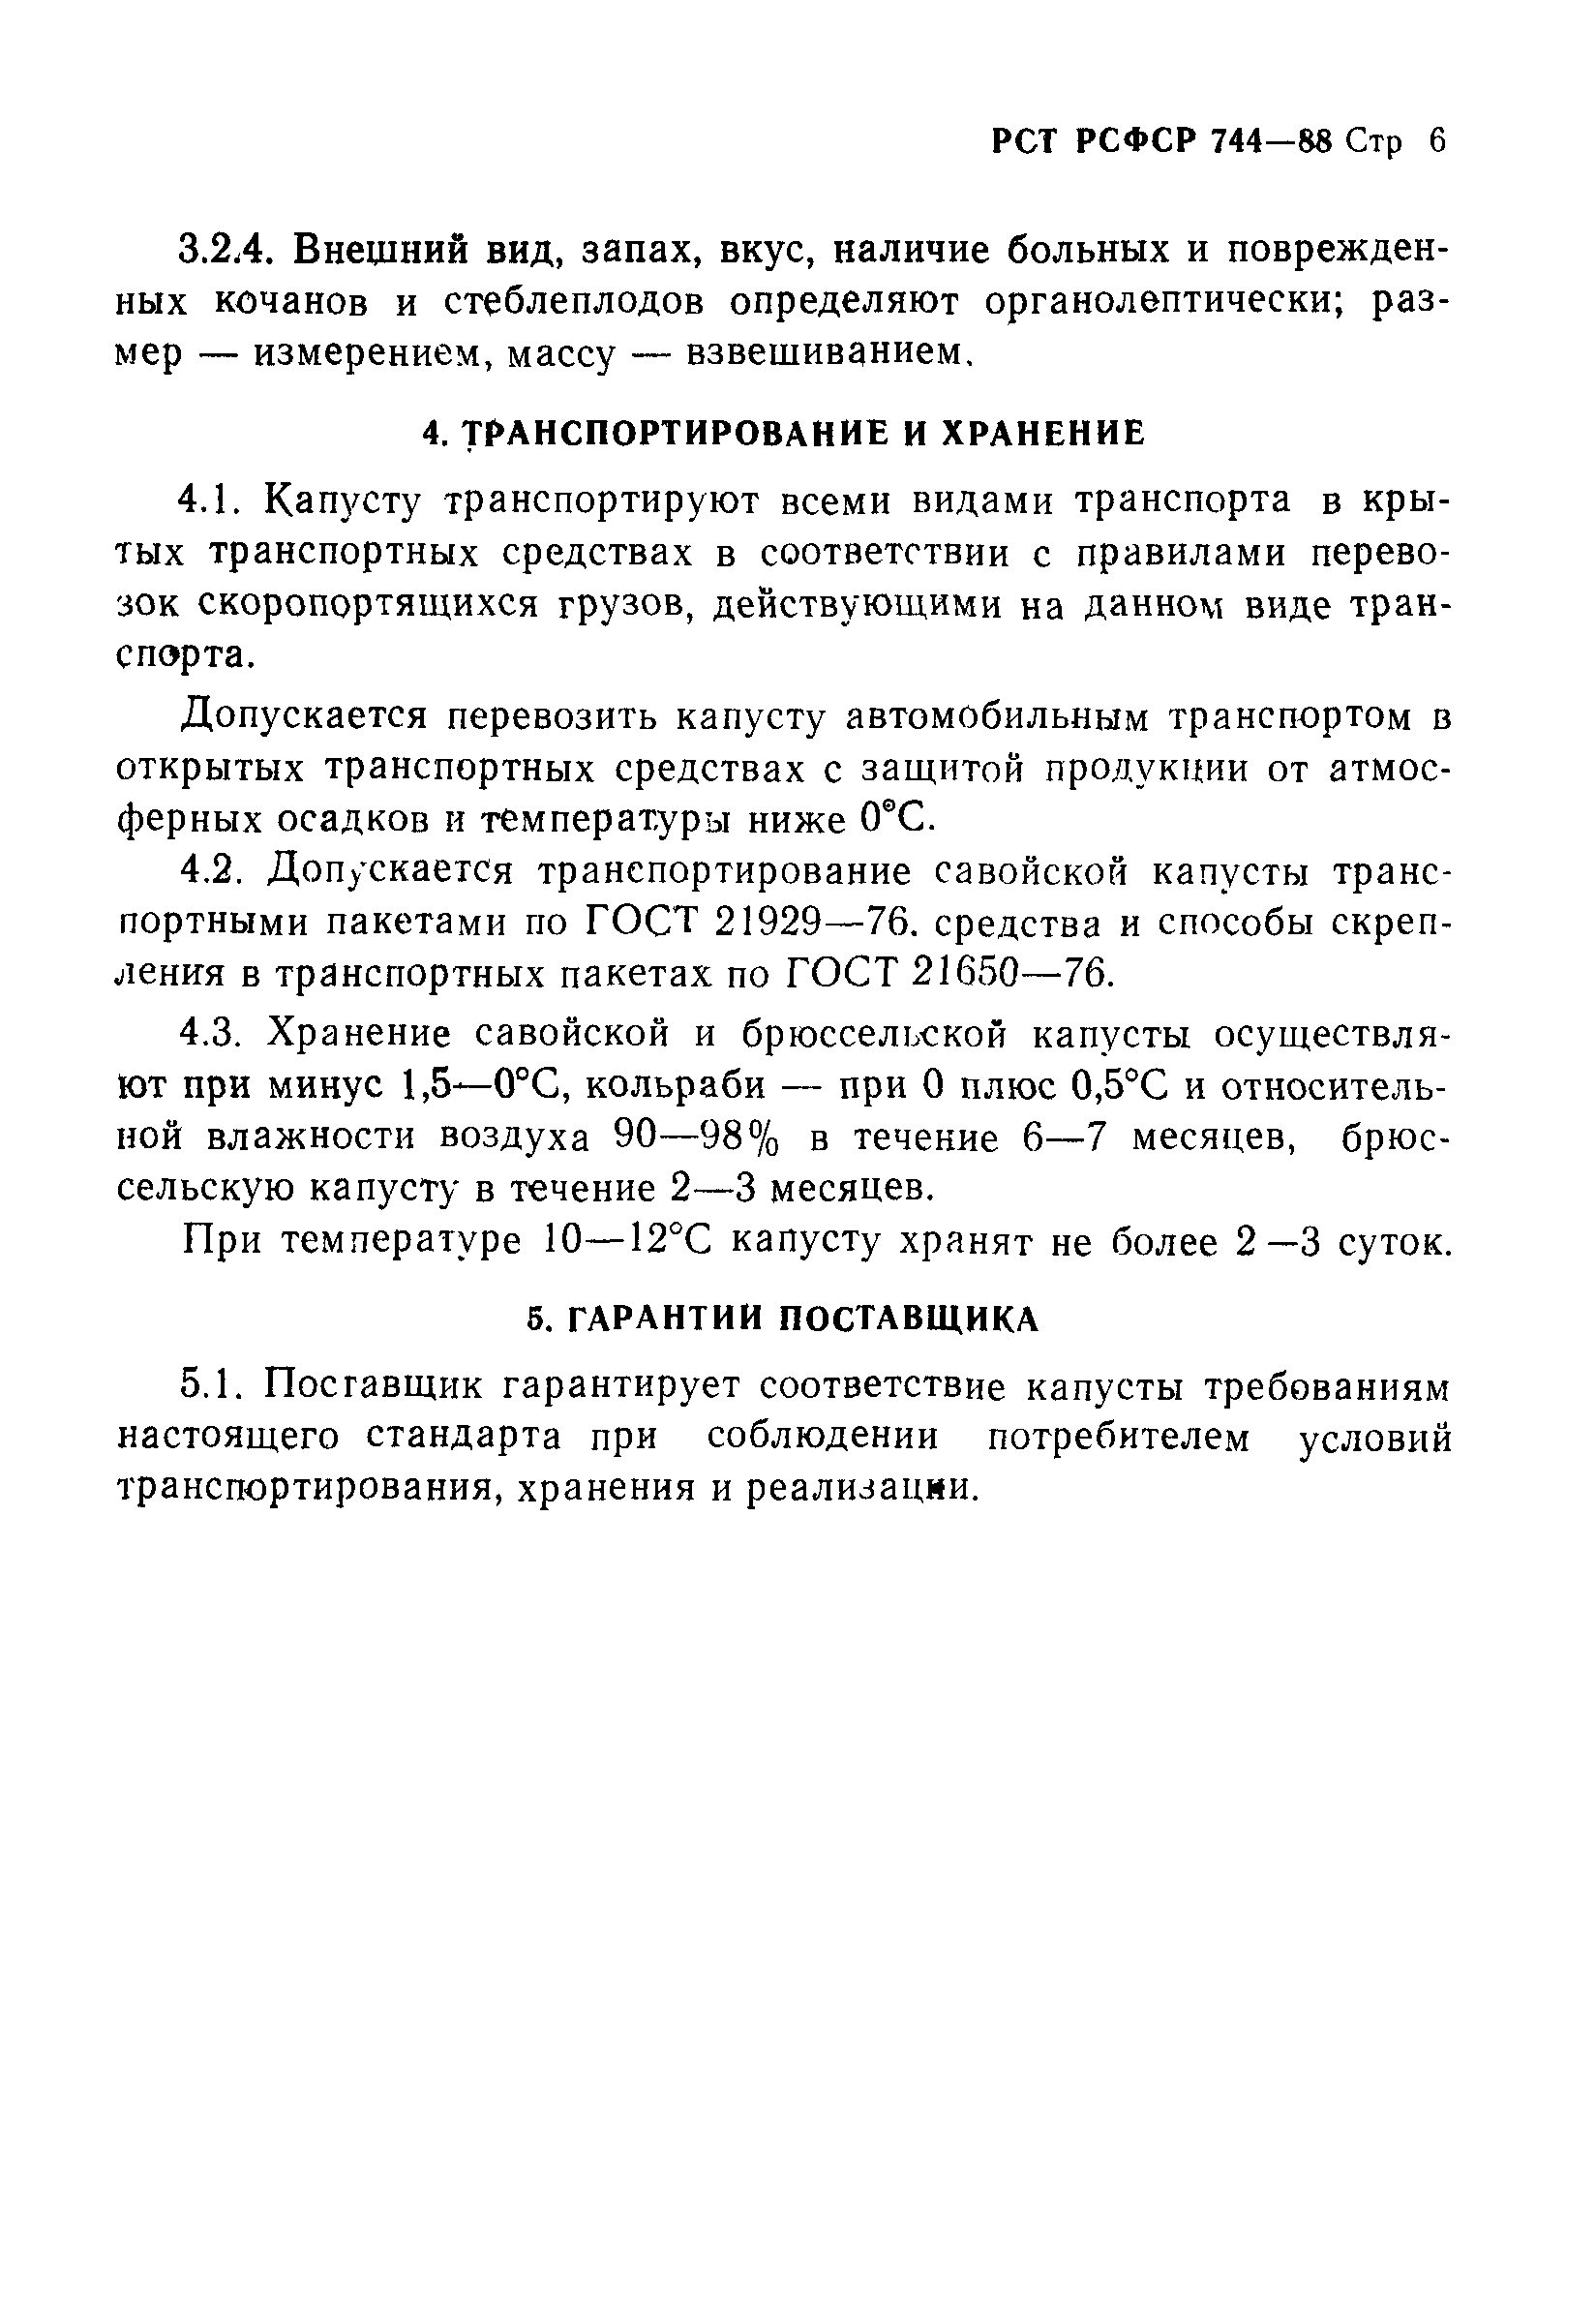 РСТ РСФСР 744-88